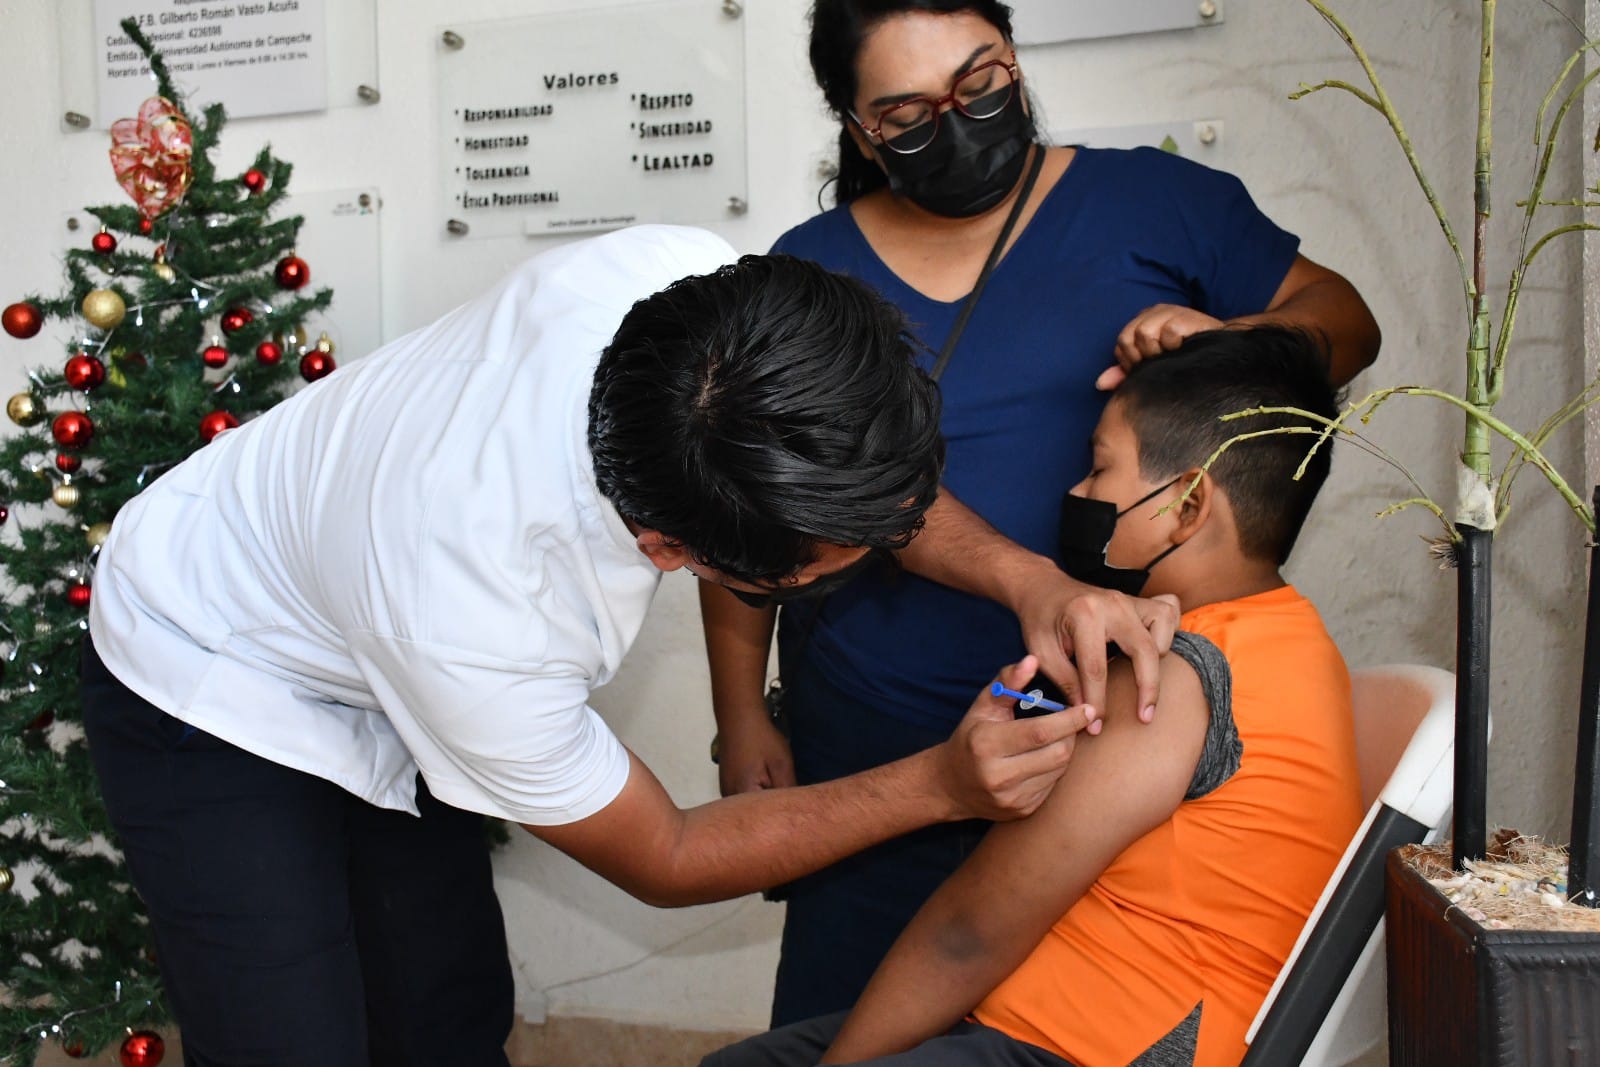 Vacaciones de invierno provoca baja demanda de vacunas contra la influenza en Campeche: SSa